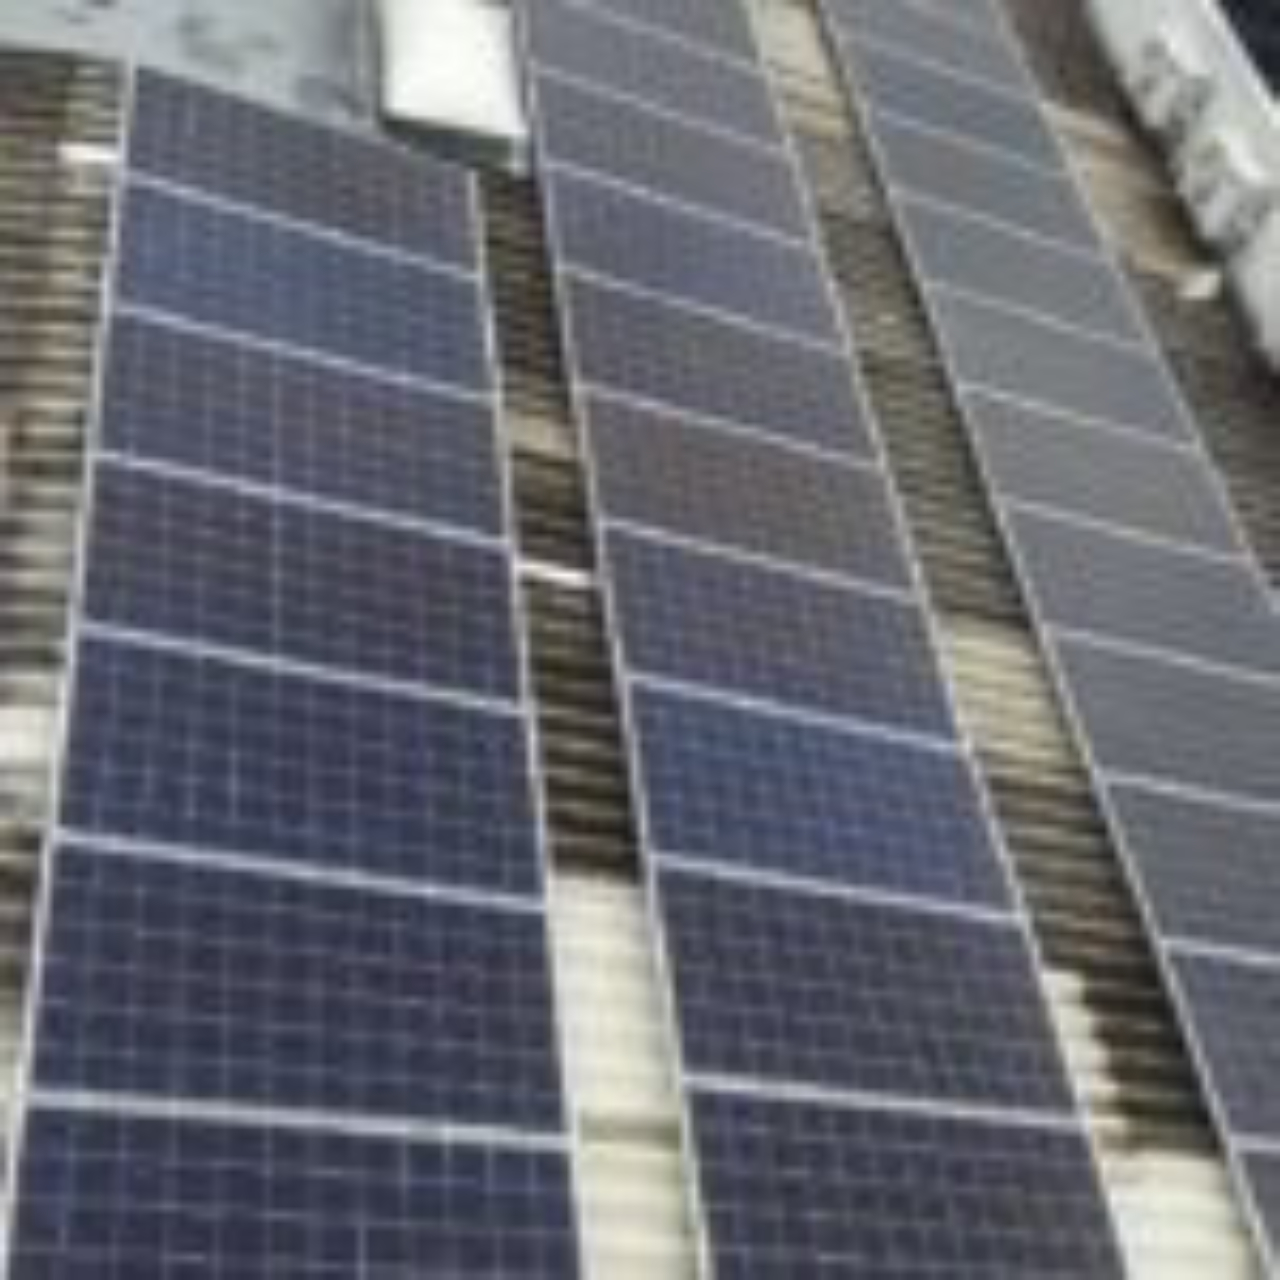 Módulos fotovoltaicos no telhado em fibra de cimento da Plunes. Os módulos também podem ser acoplados em telhados metálicos, de telhas romanas e outras superfícies. Foto: Divulgação Plunes.